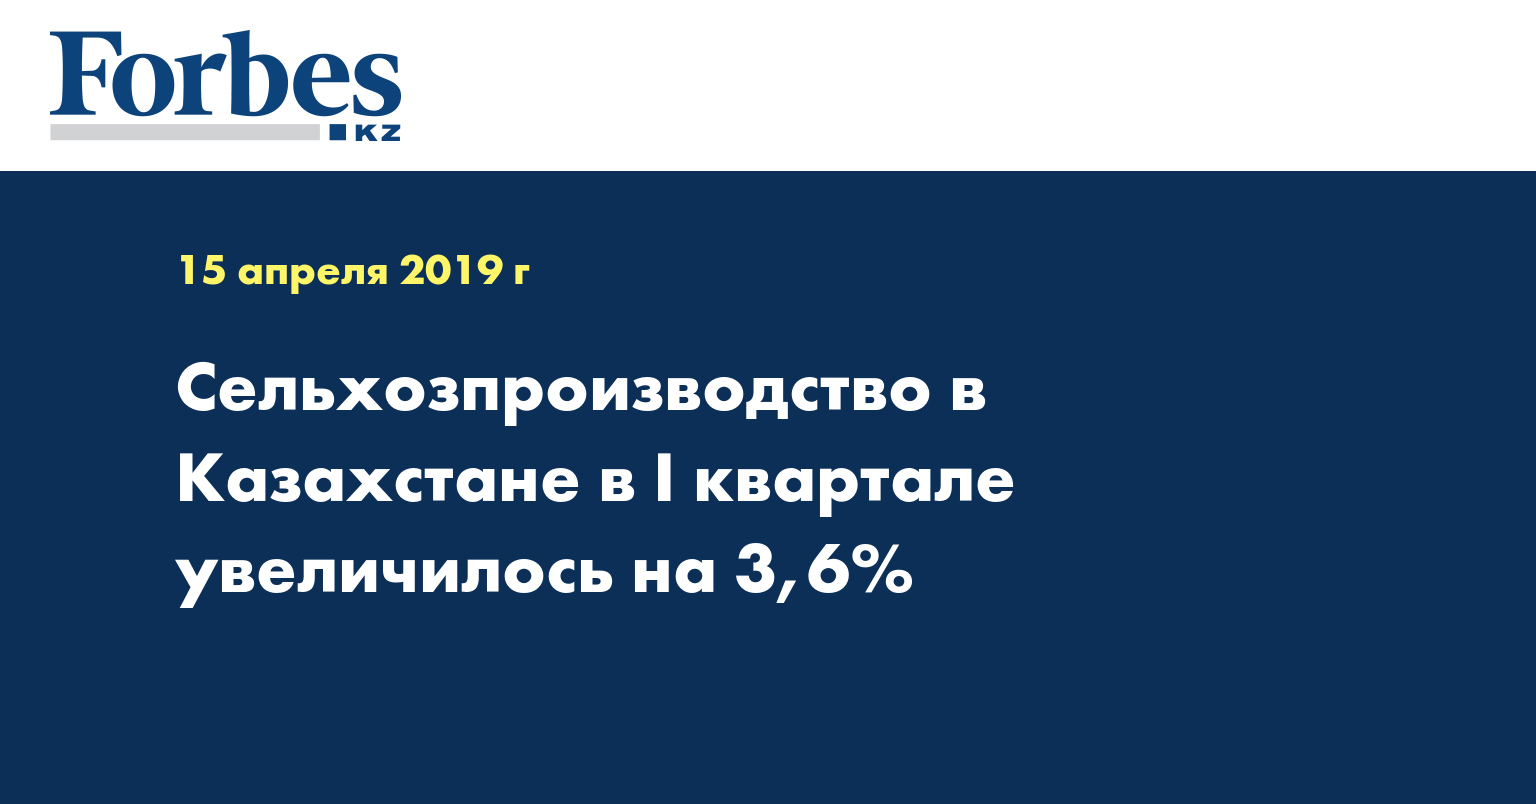 Сельхозпроизводство в Казахстане в I квартале увеличилось на 3,6%